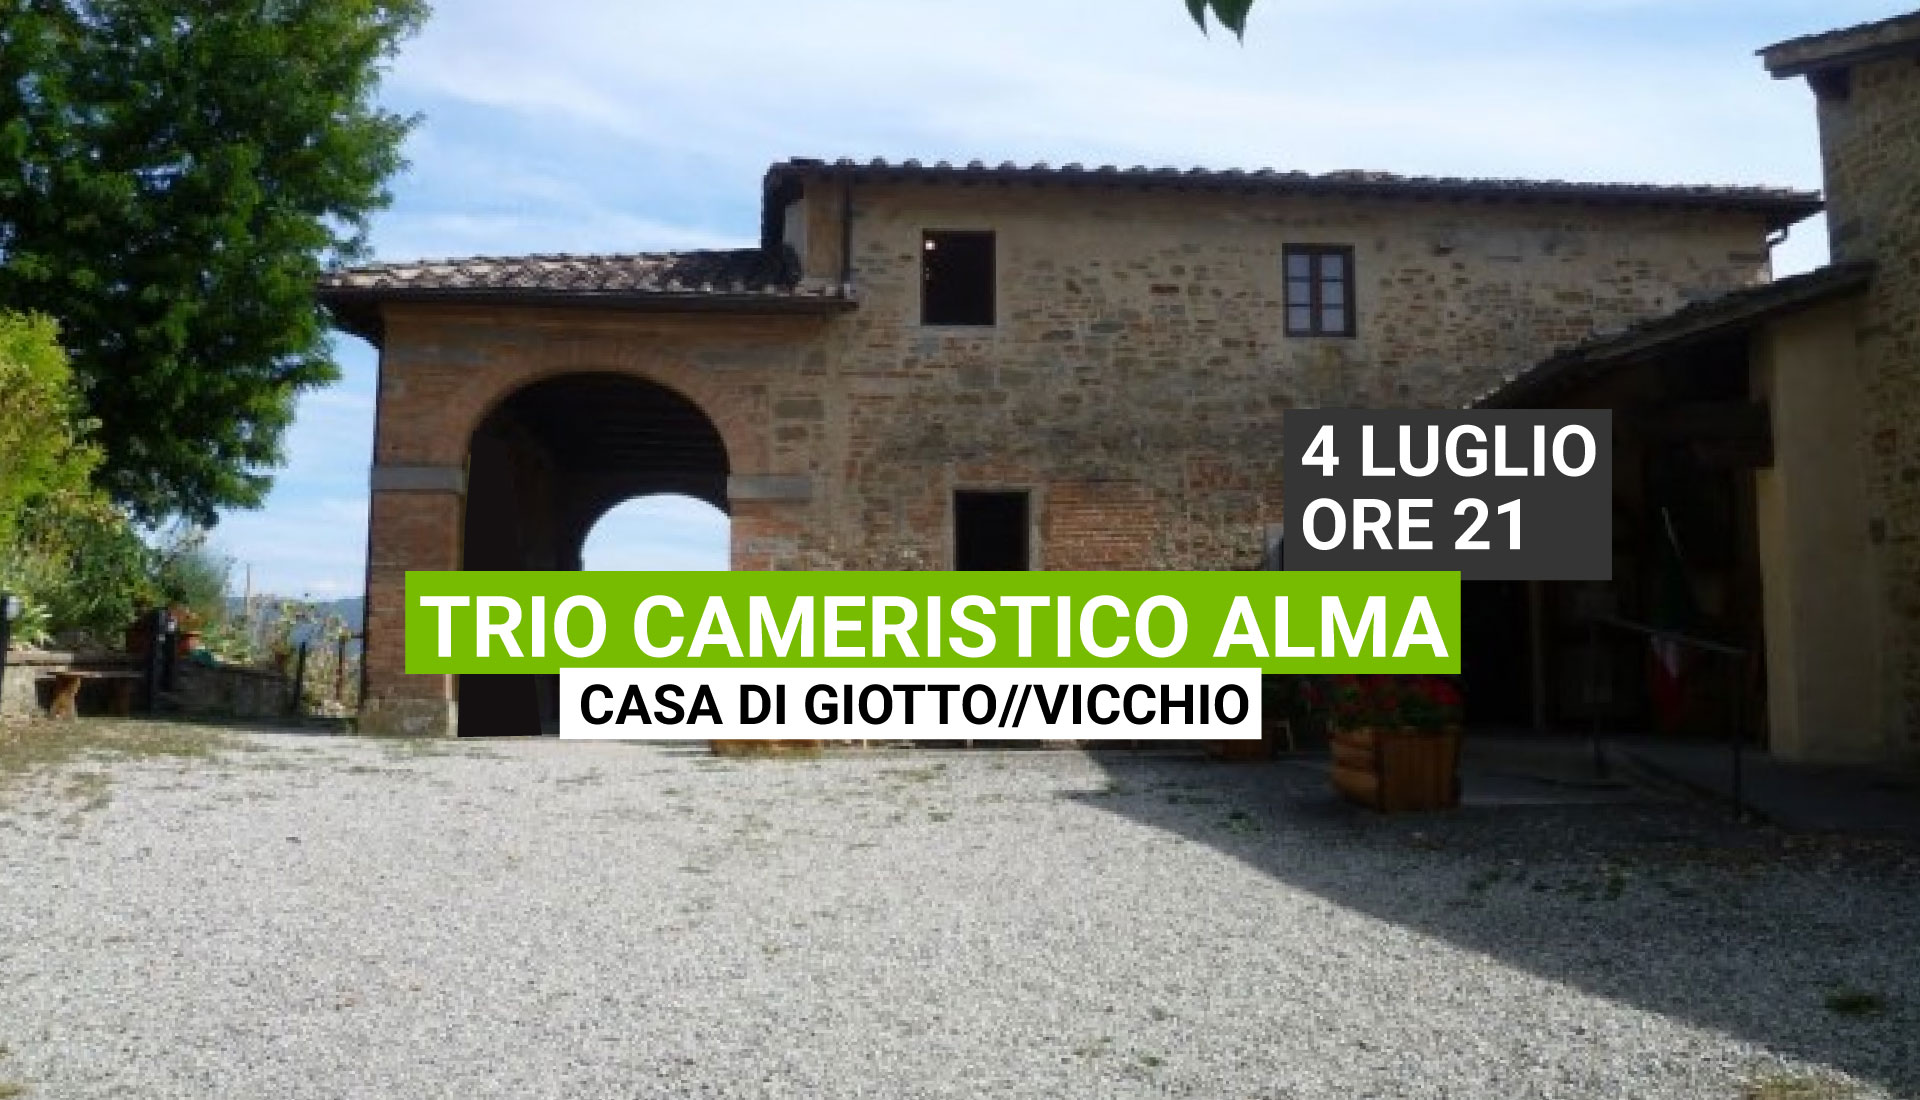 Trio Cameristico Alma in concerto – Casa di Giotto Vicchio 4 Luglio ore 21